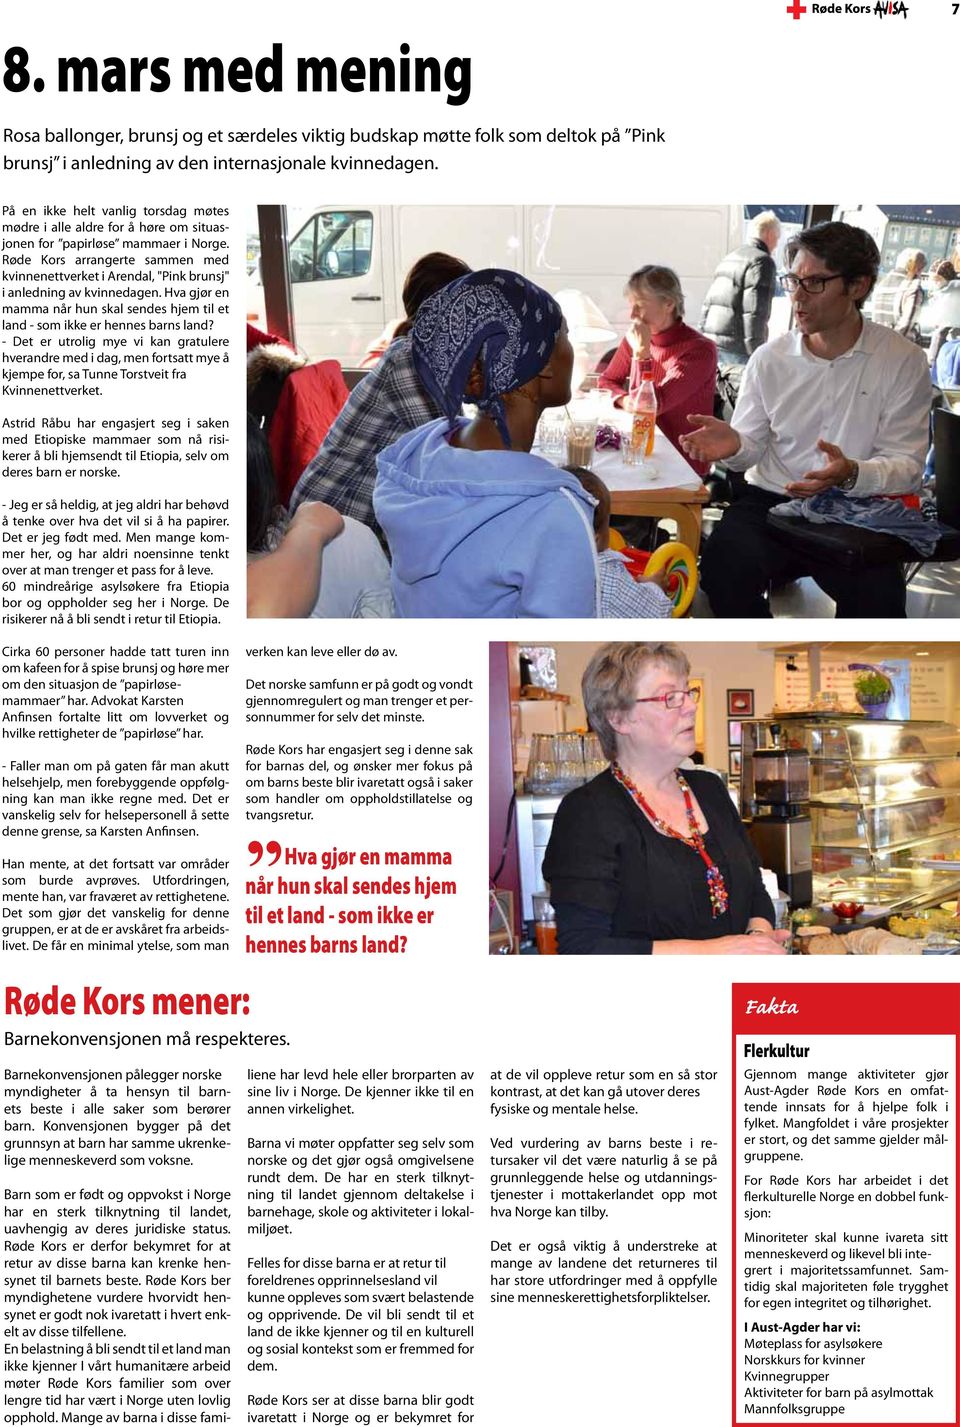 Røde Kors arrangerte sammen med kvinnenettverket i Arendal, "Pink brunsj" i anledning av kvinnedagen. Hva gjør en mamma når hun skal sendes hjem til et land - som ikke er hennes barns land?